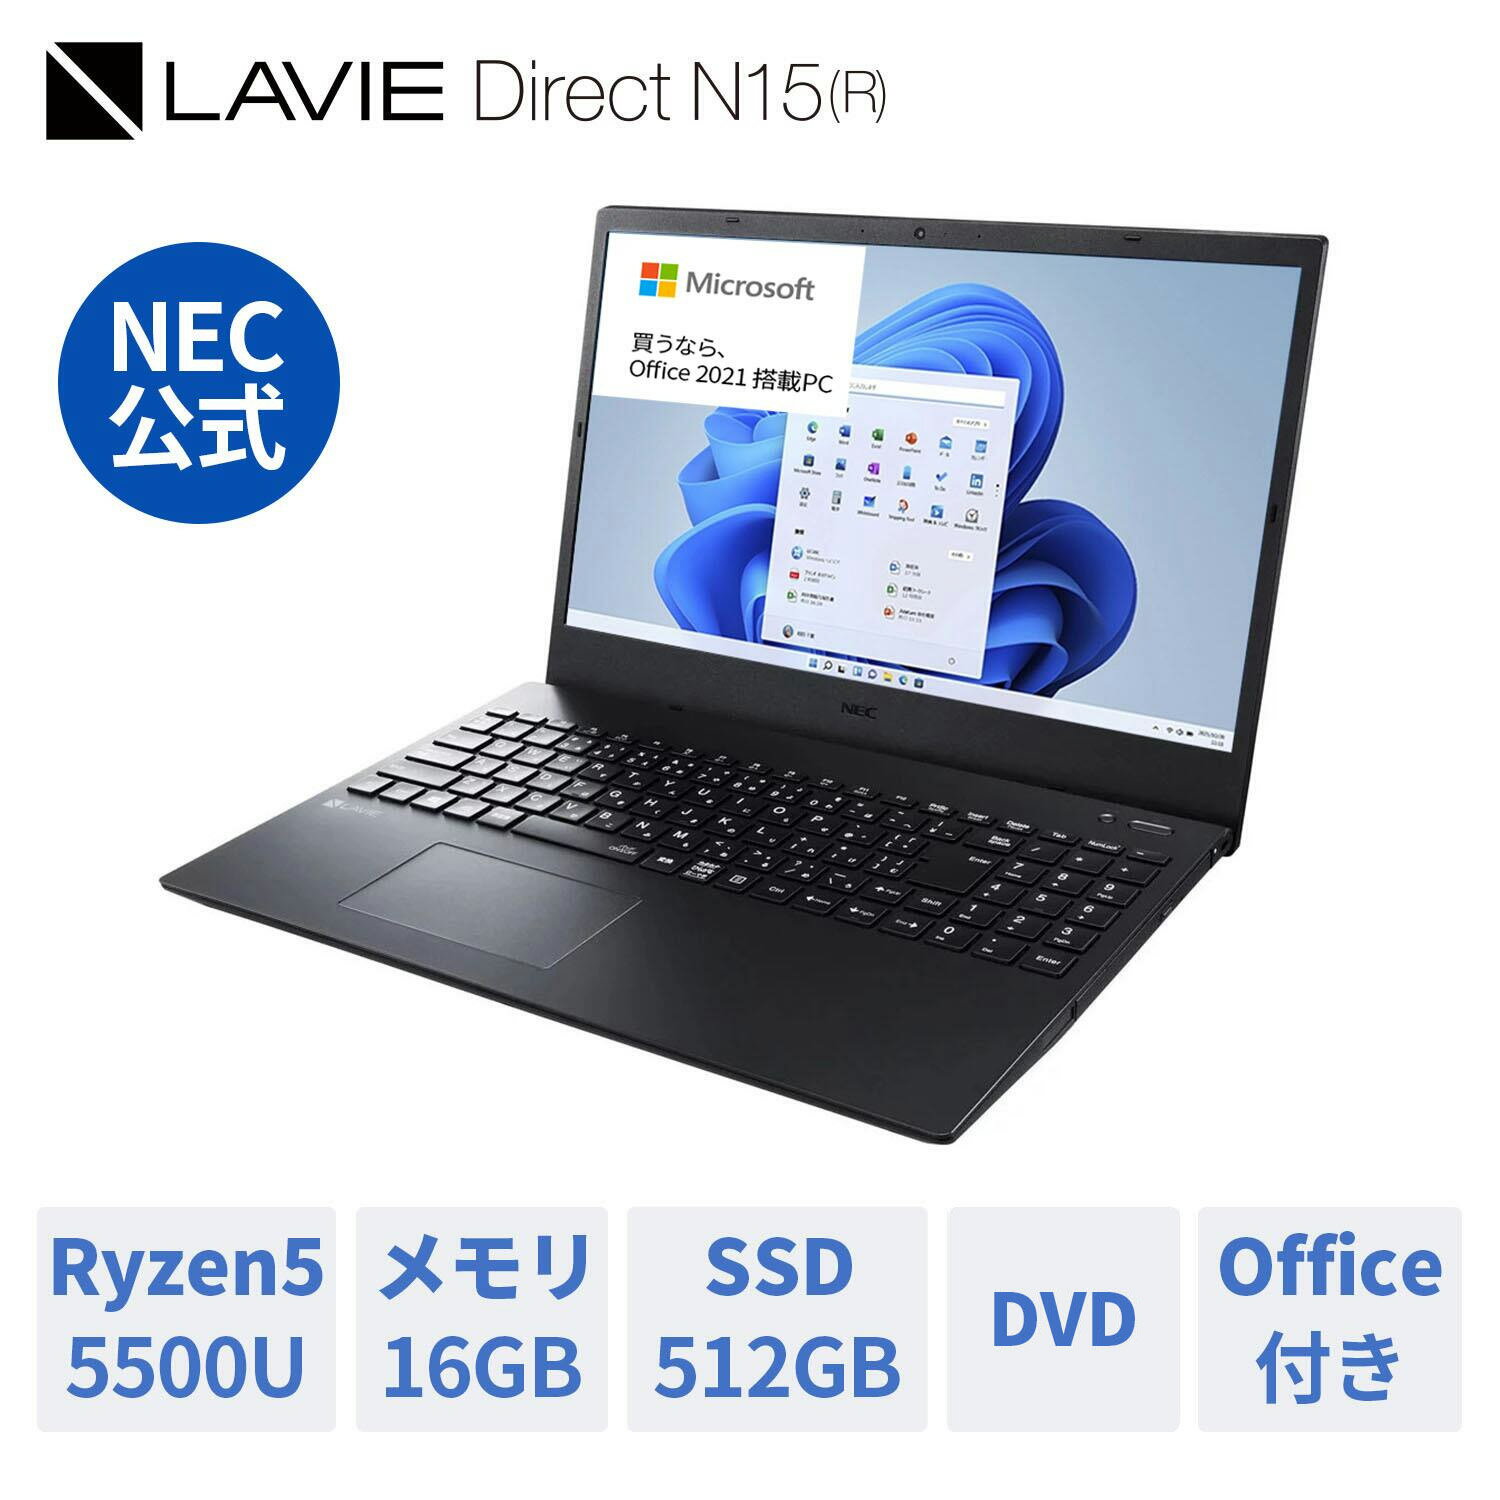  新品 NEC ノートパソコン office付き LAVIE Direct N15 (R) 15.6インチ Windows 11 Home AMD Ryzen 5-5500U メモリ 16GB 512GB SSD DVD 1年保証 送料無料 人気商品 yxe